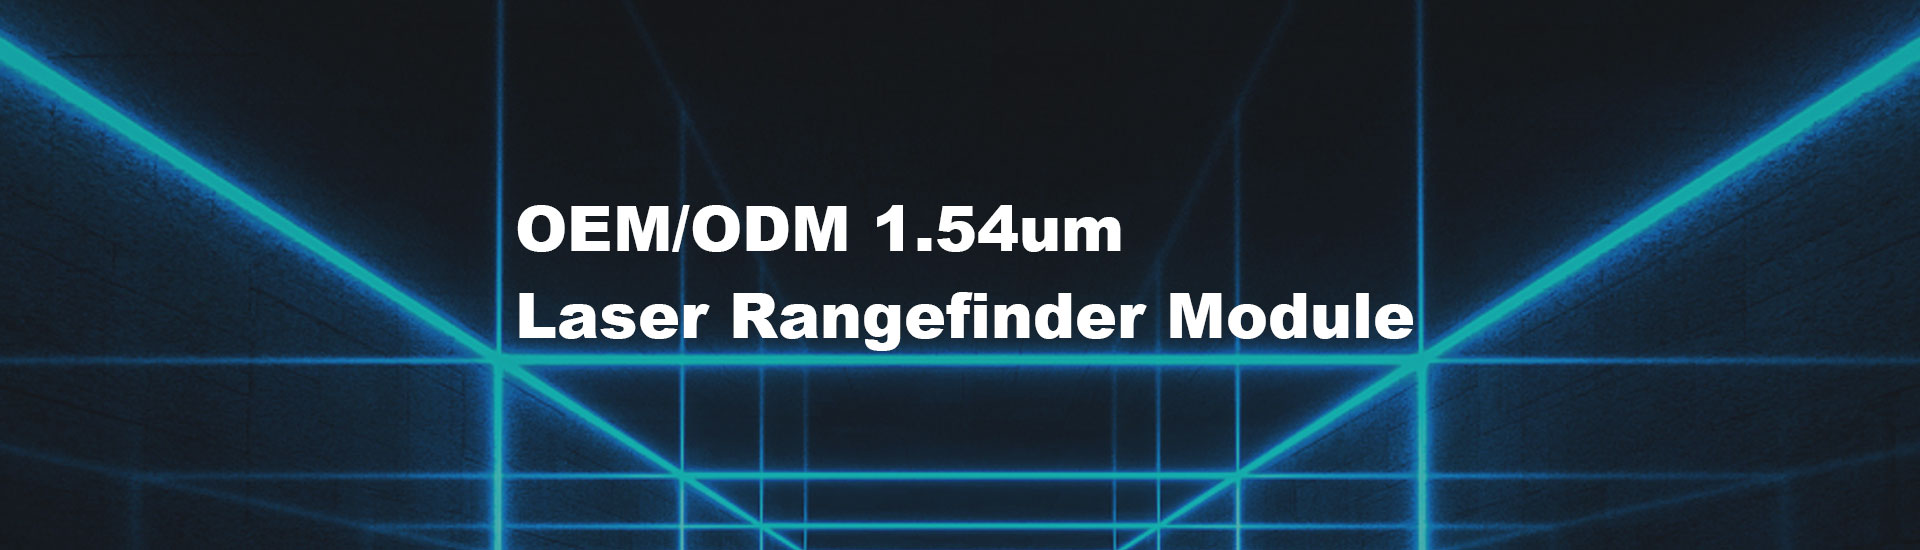 15km  Laser Rangefinder